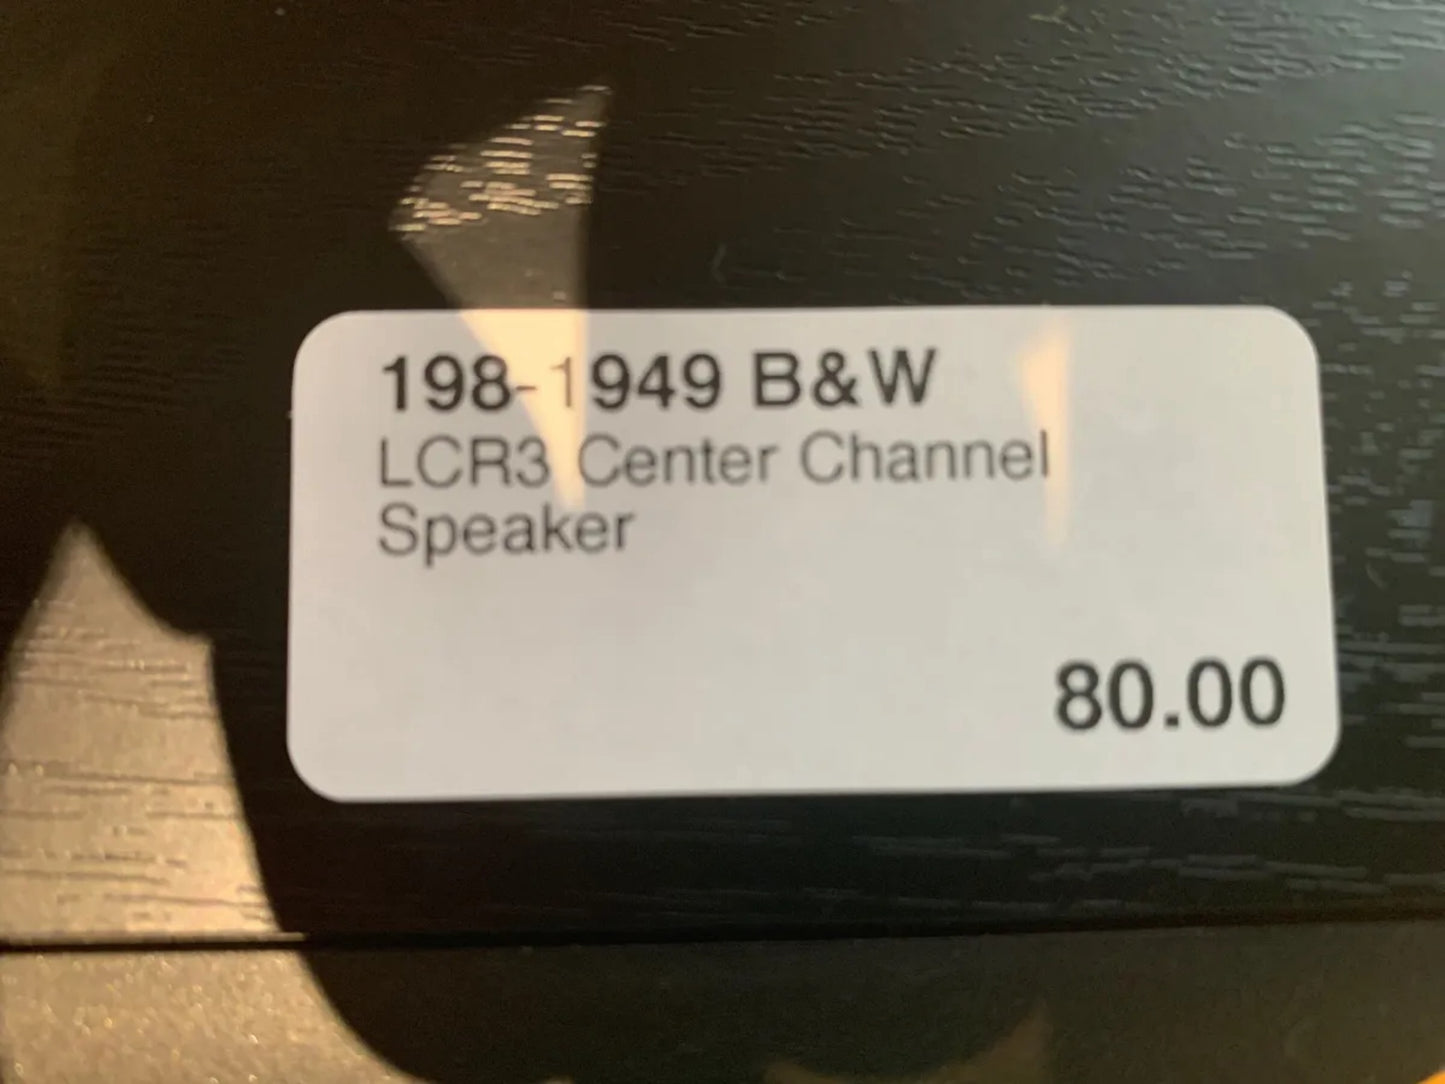 B&W LCR3 Center Channel Speaker